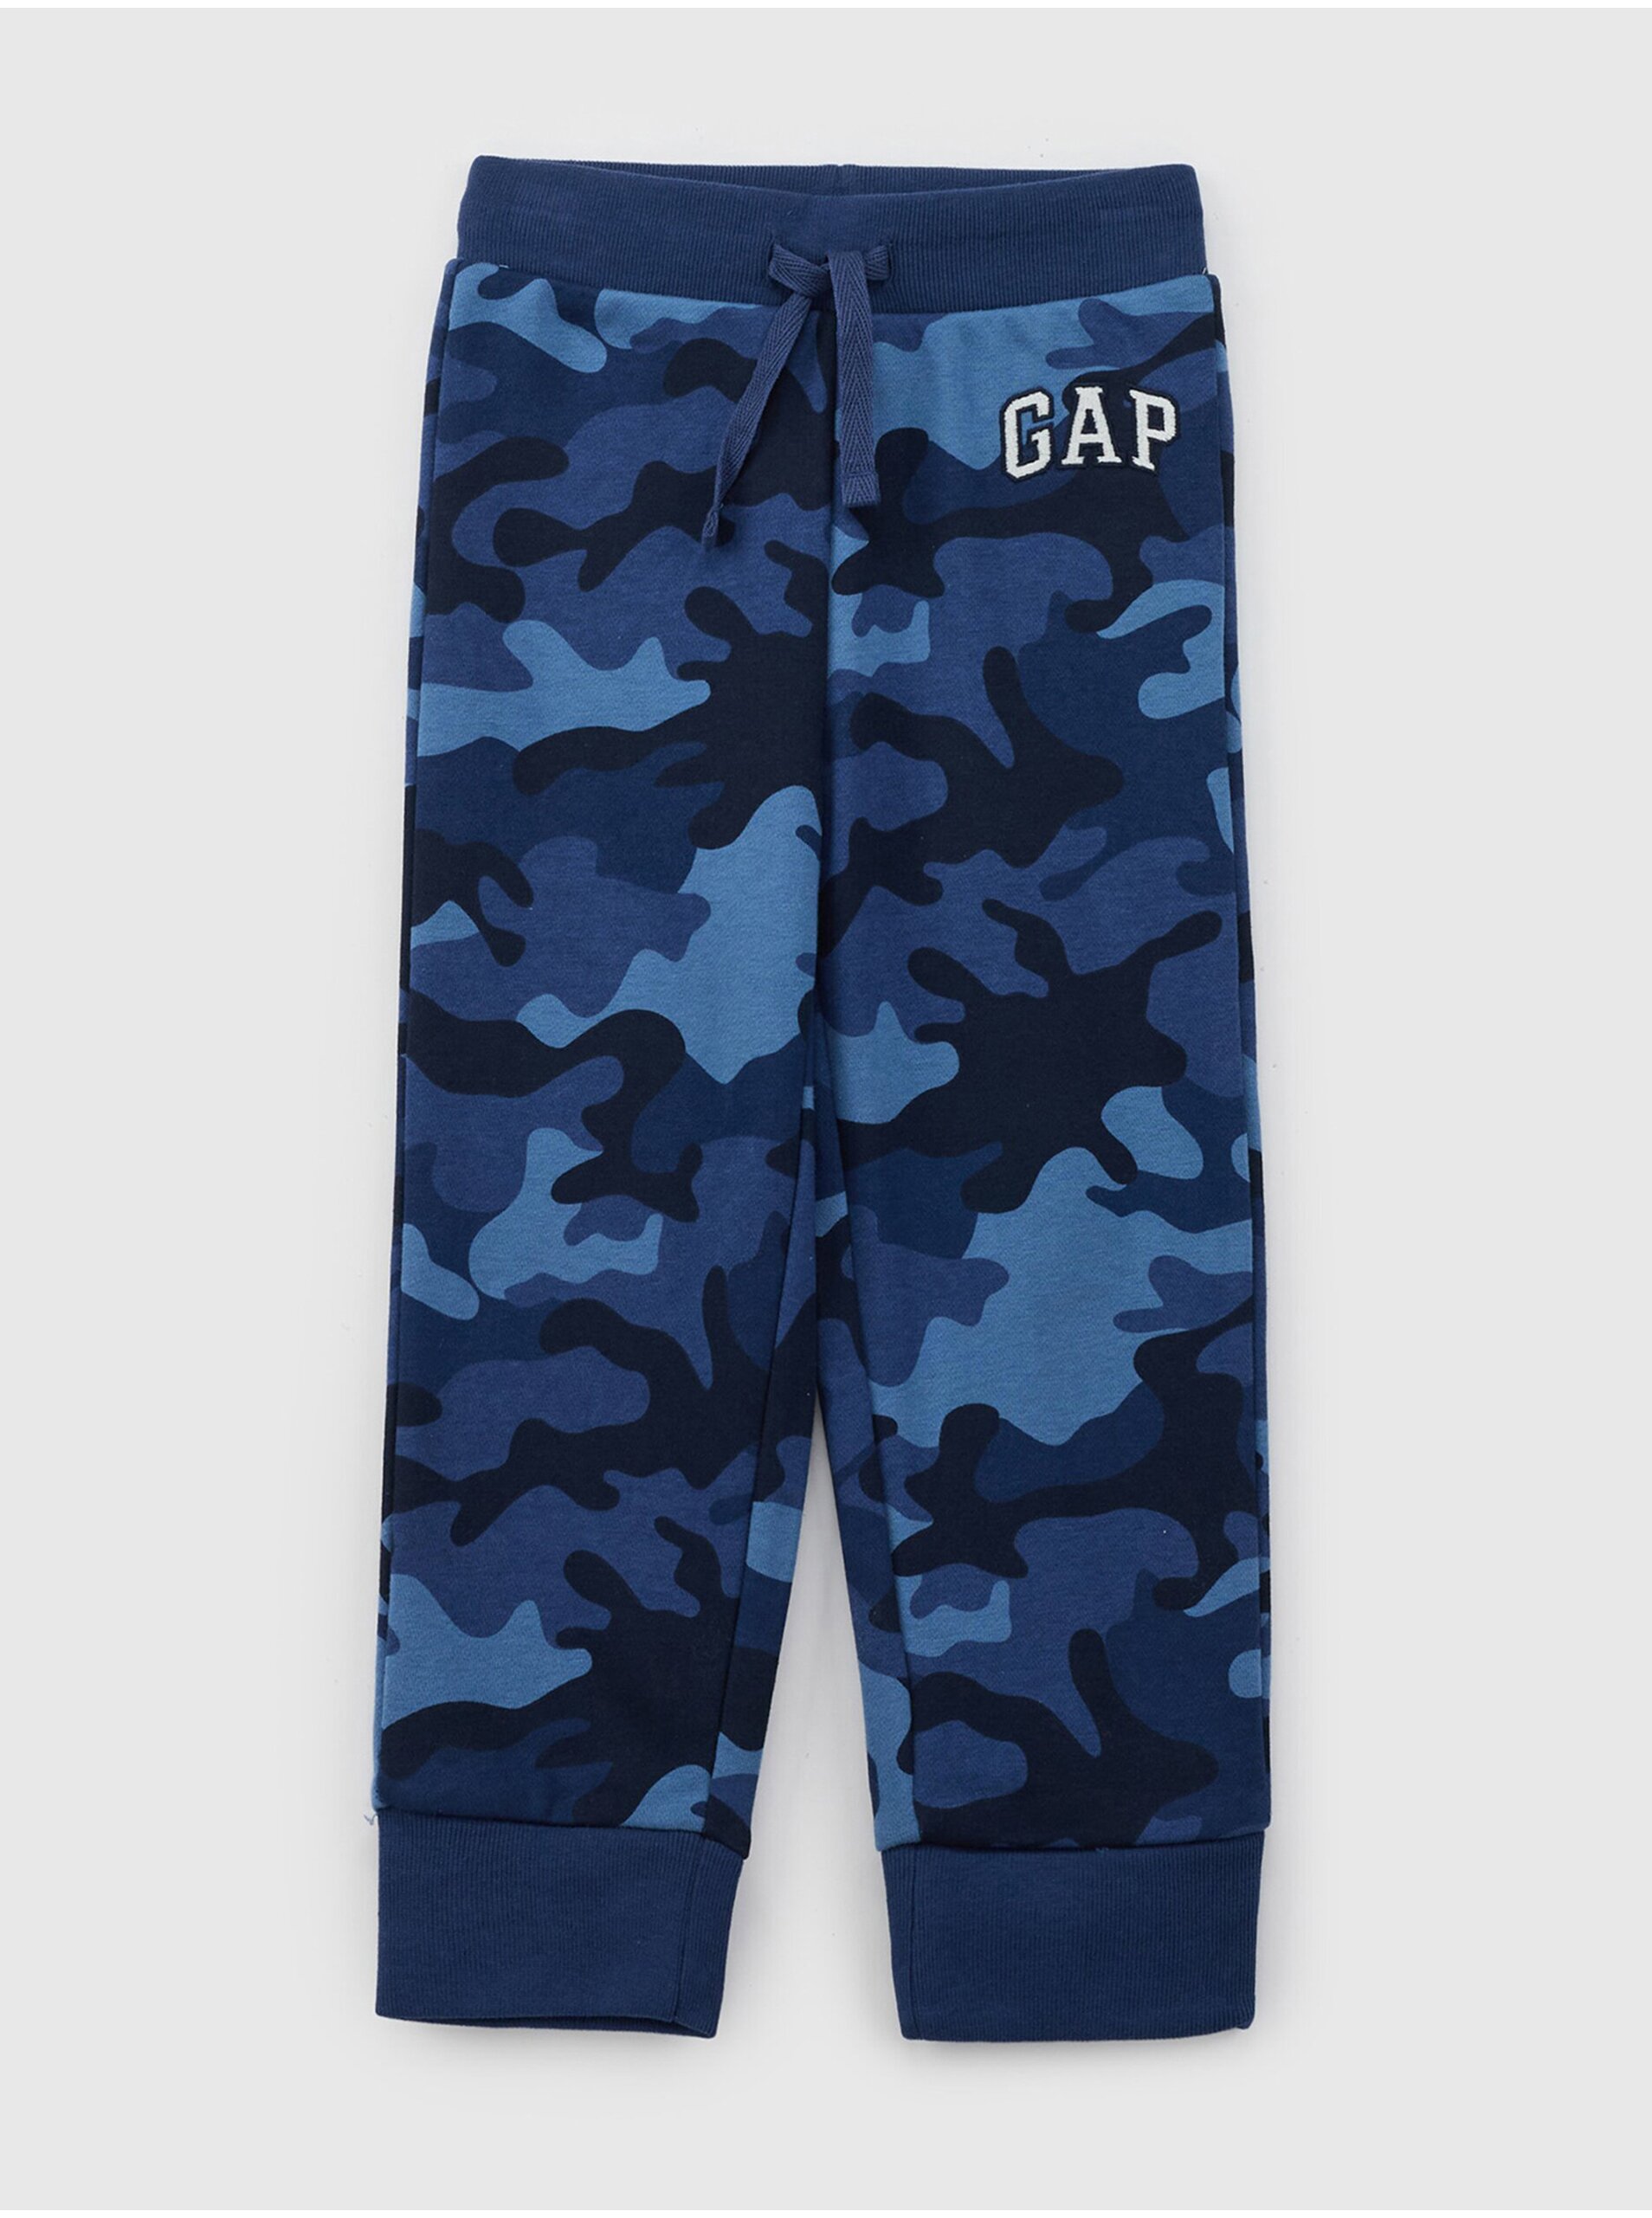 Lacno Tmavomodré chlapčenské army tepláky s logom GAP